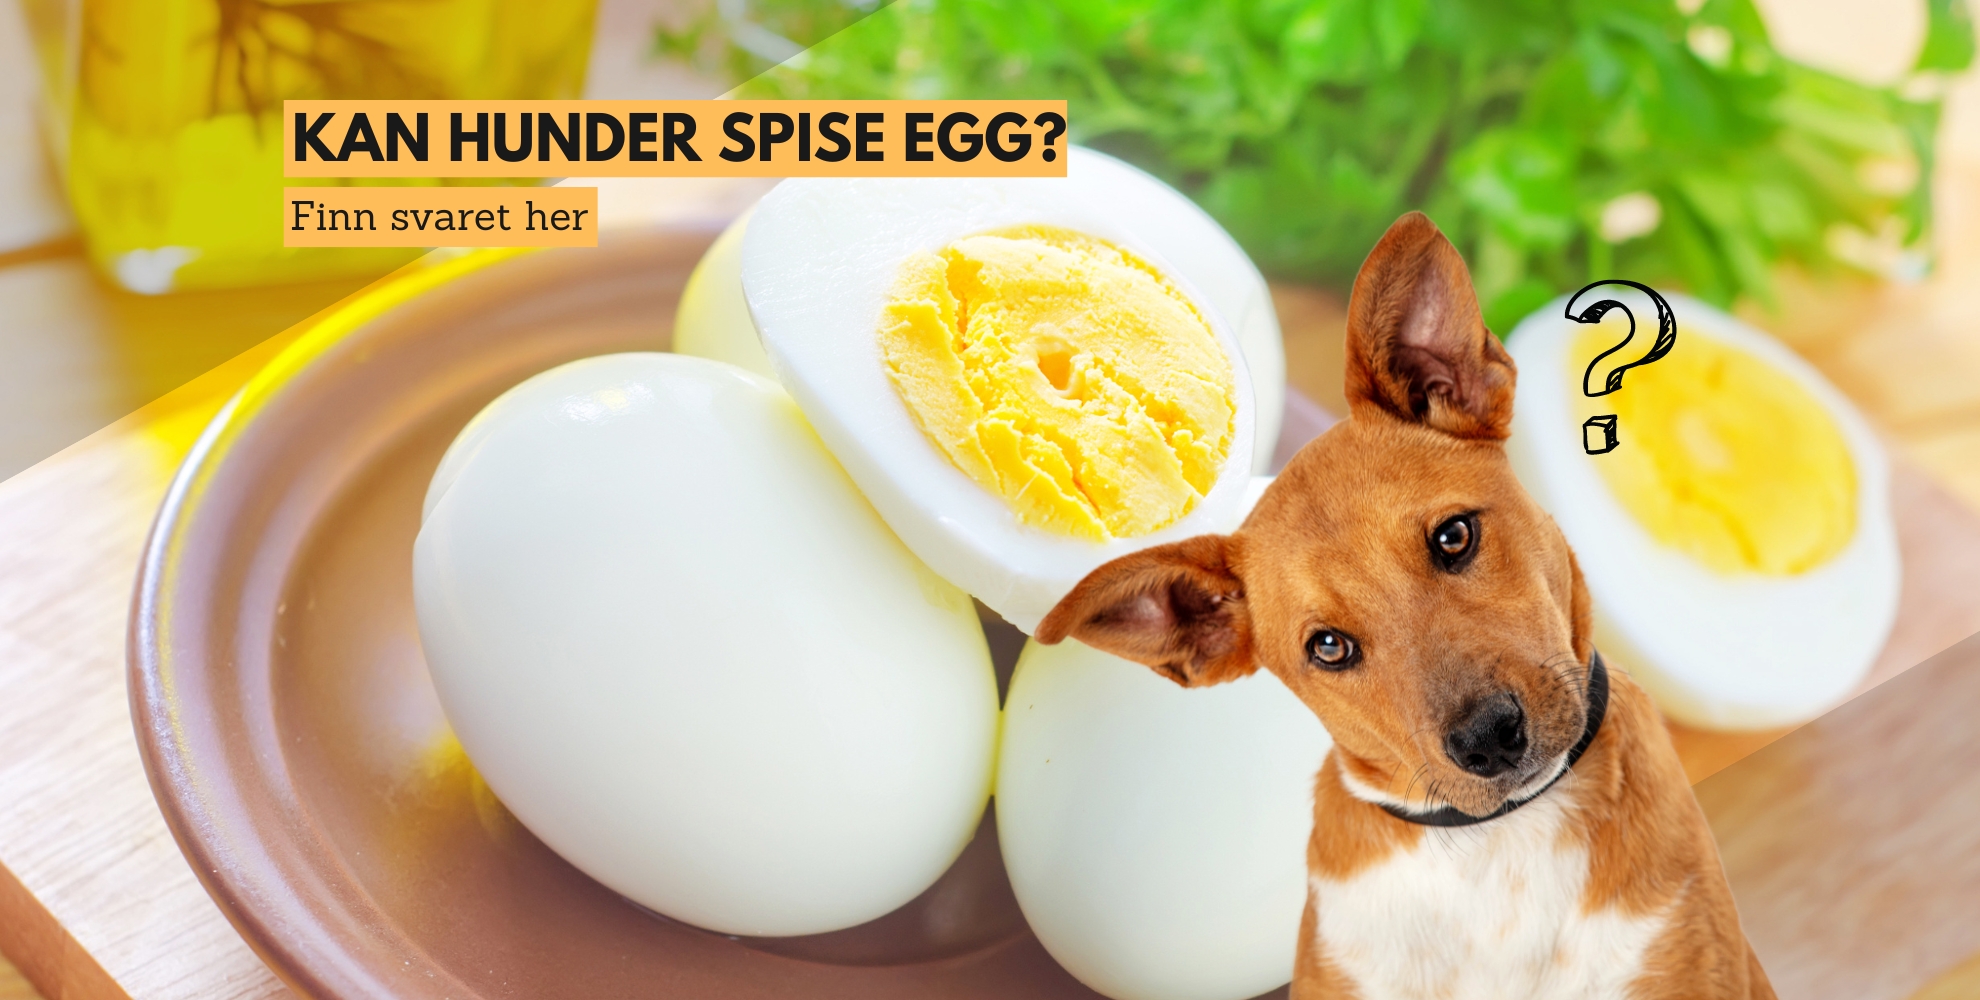 Bilde av en hund og et egg, med tekst: Kan hunder spise egg? Finn svaret her